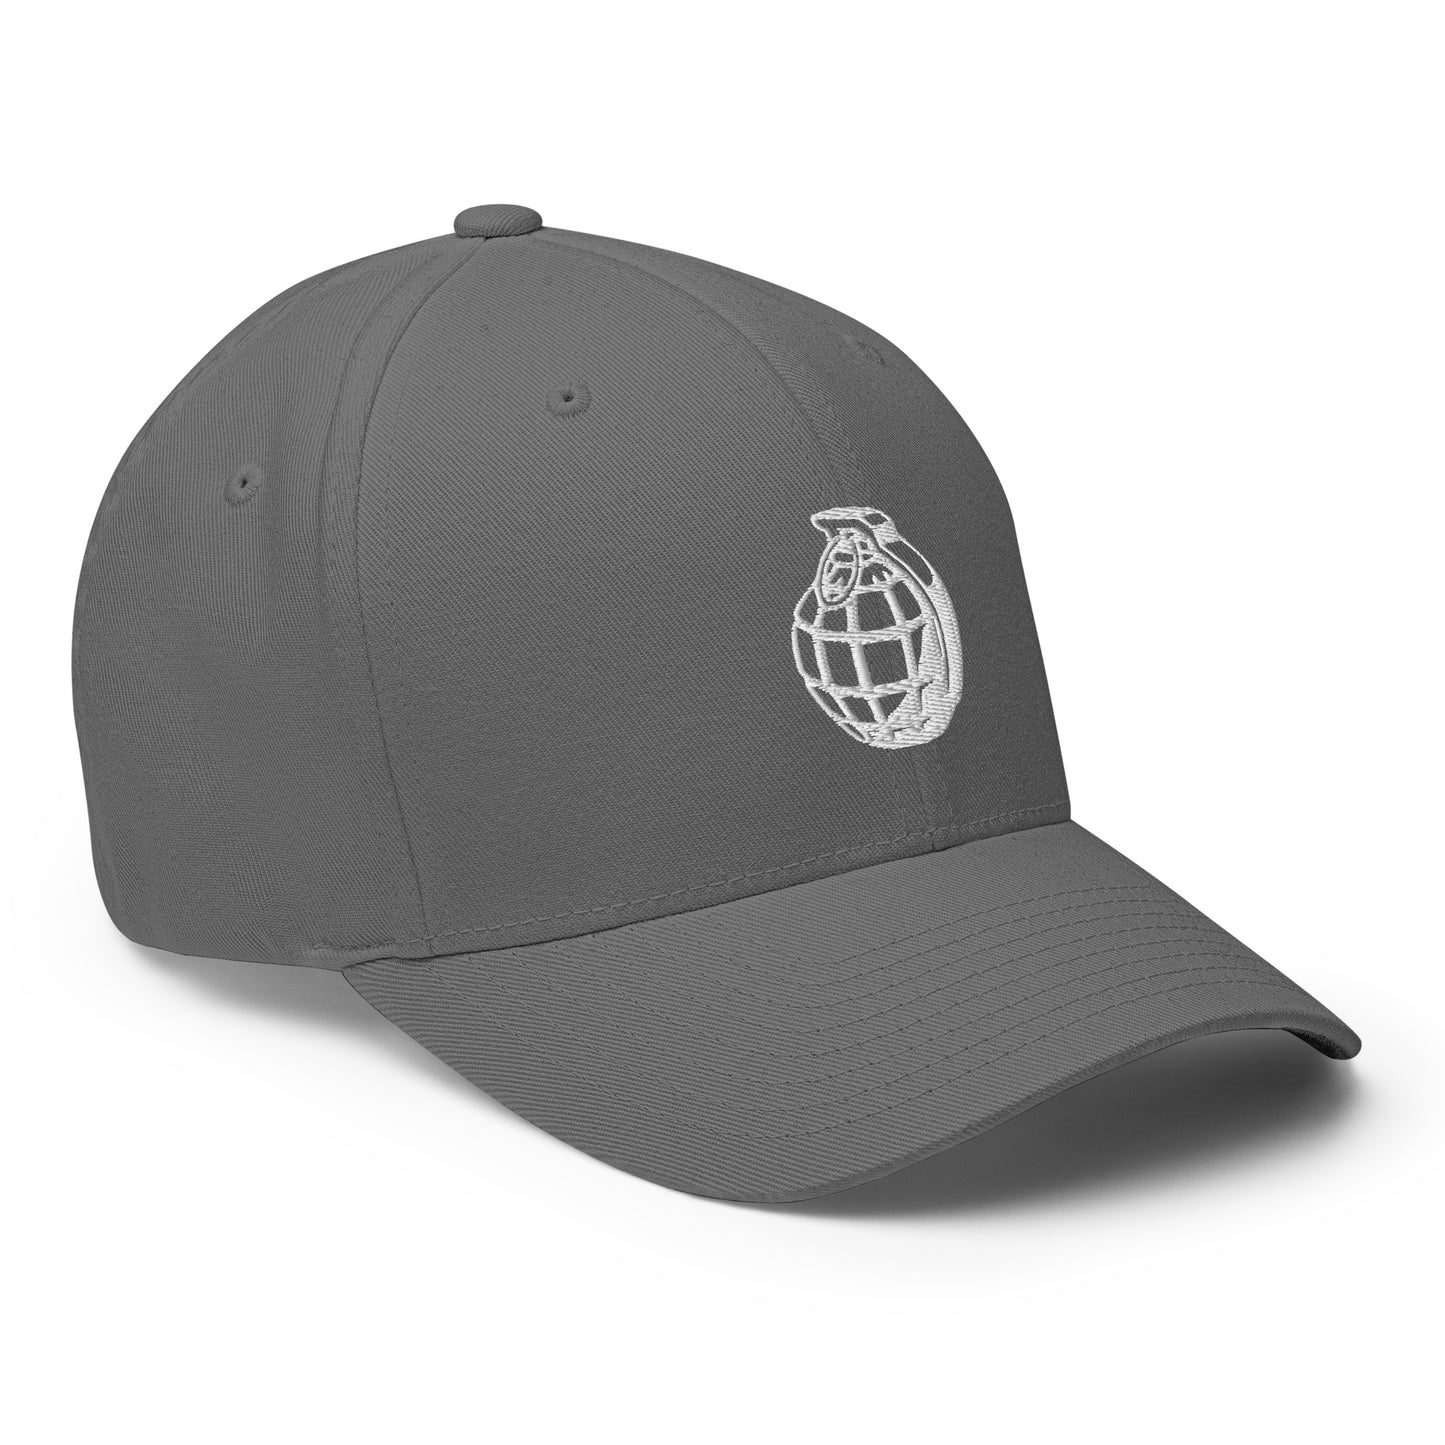 Baseball Cap with Grenade Symbol